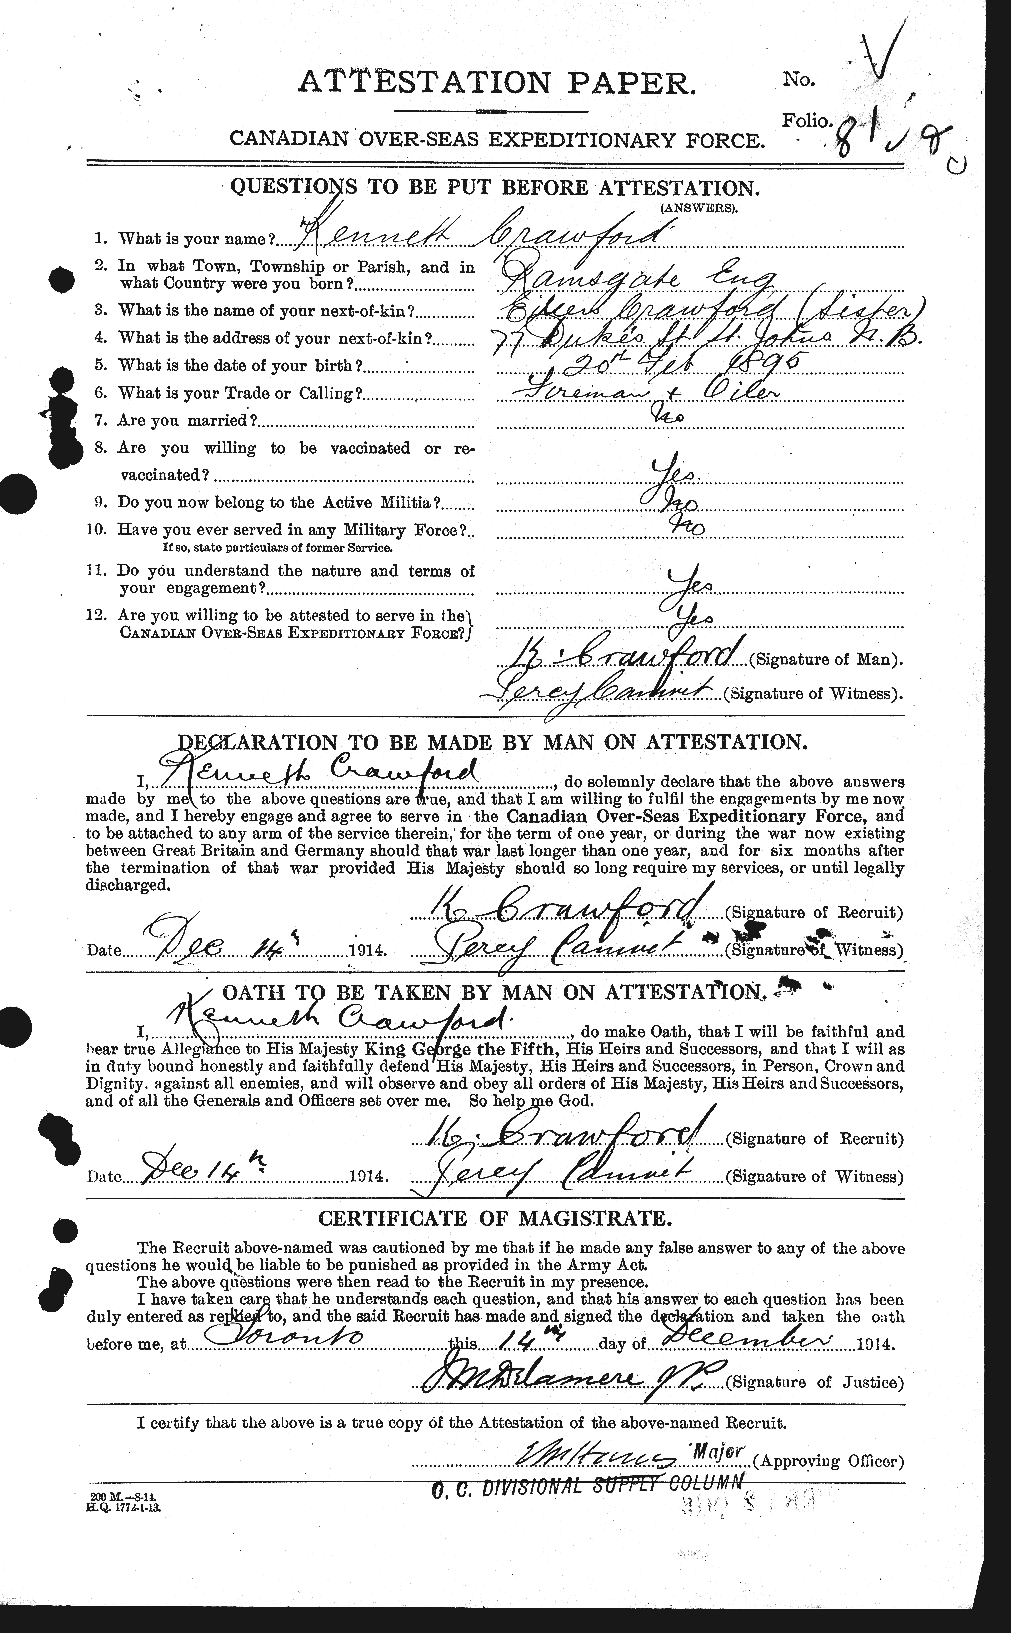 Dossiers du Personnel de la Première Guerre mondiale - CEC 061806a